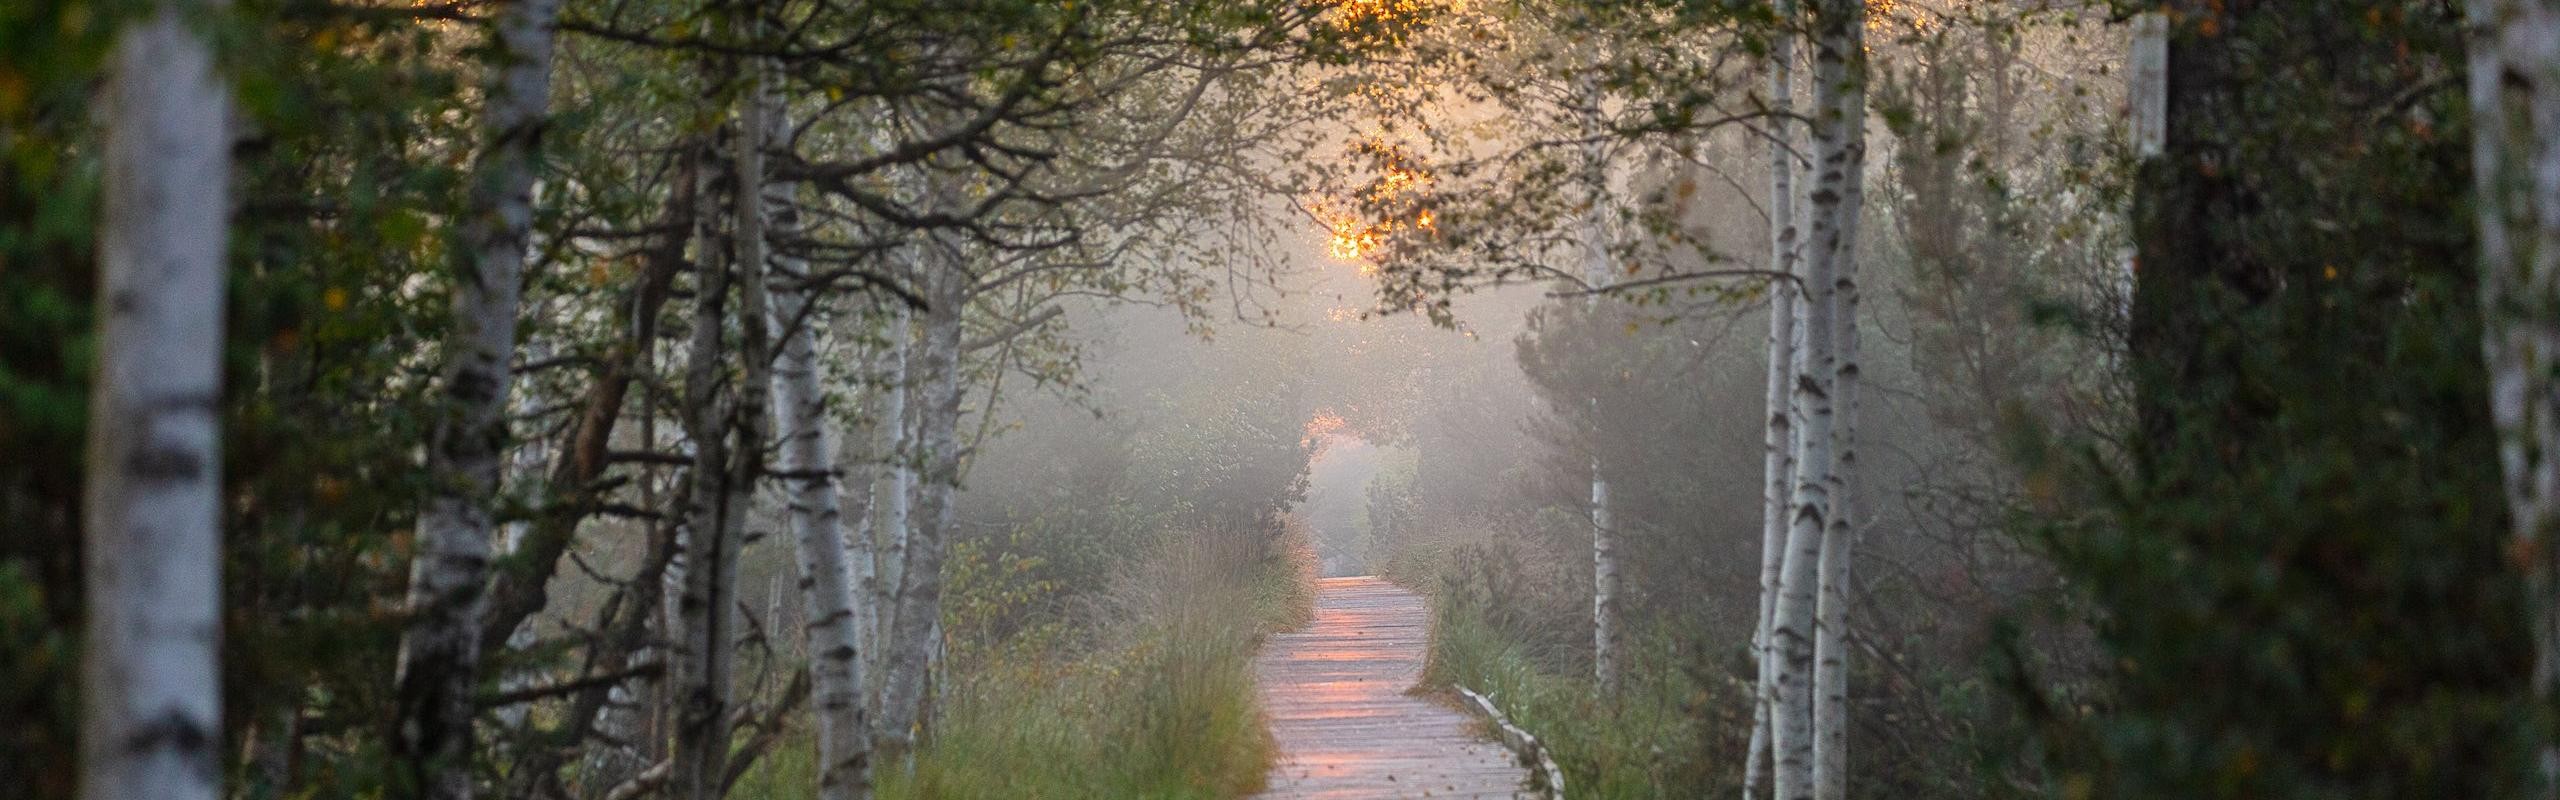 Das Bild zeigt einen Holzbohleweg durch einen vernebelten Wald und Sonne im Hintergrund